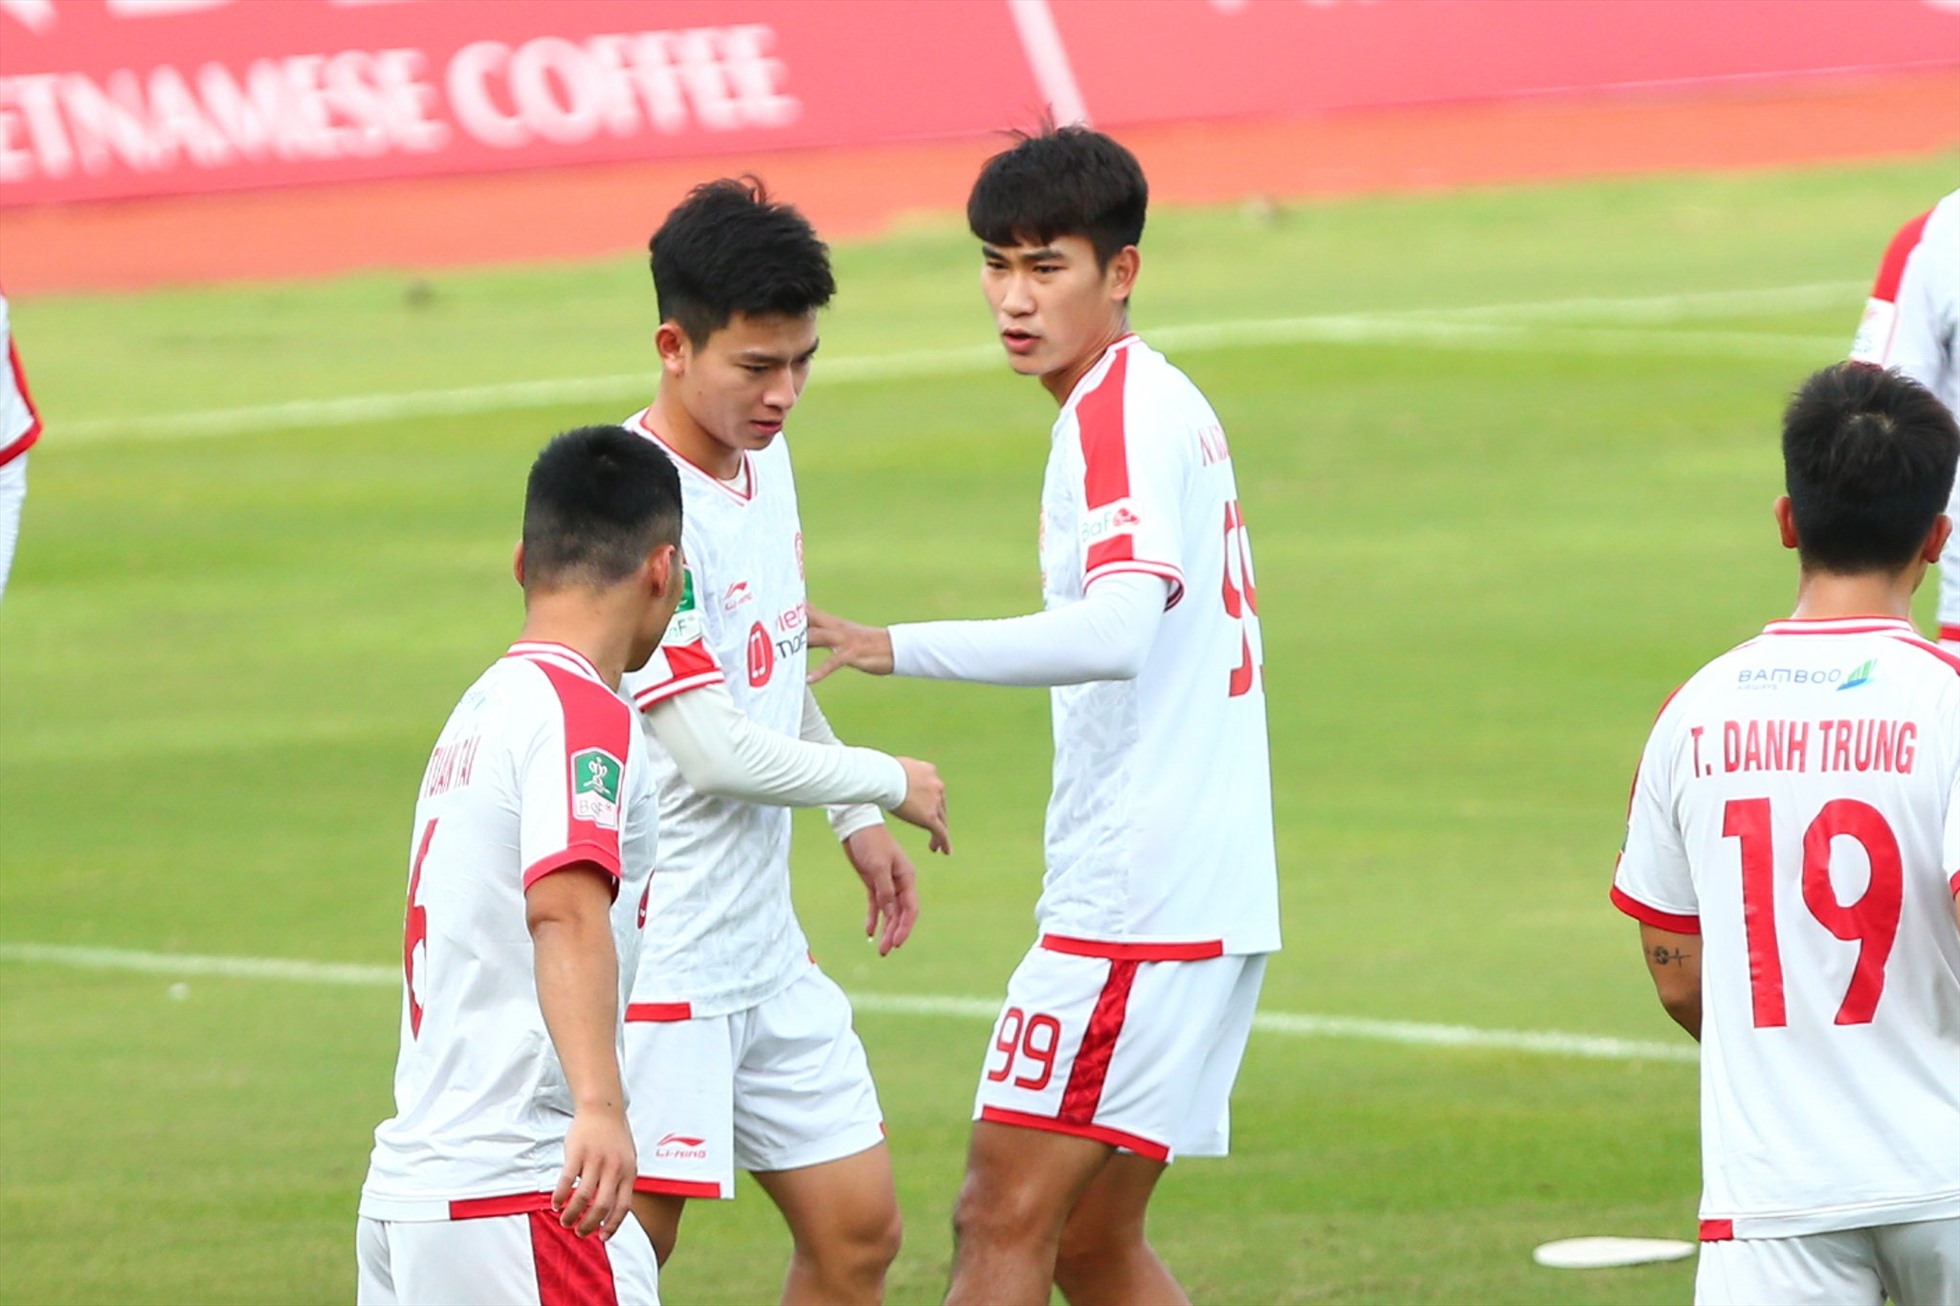 Theo quan sát, các cầu thủ Viettel đang có tâm lý thoải mái sau 2 trận thắng liên tiếp trước Nam Định và Sông Lam Nghệ An.